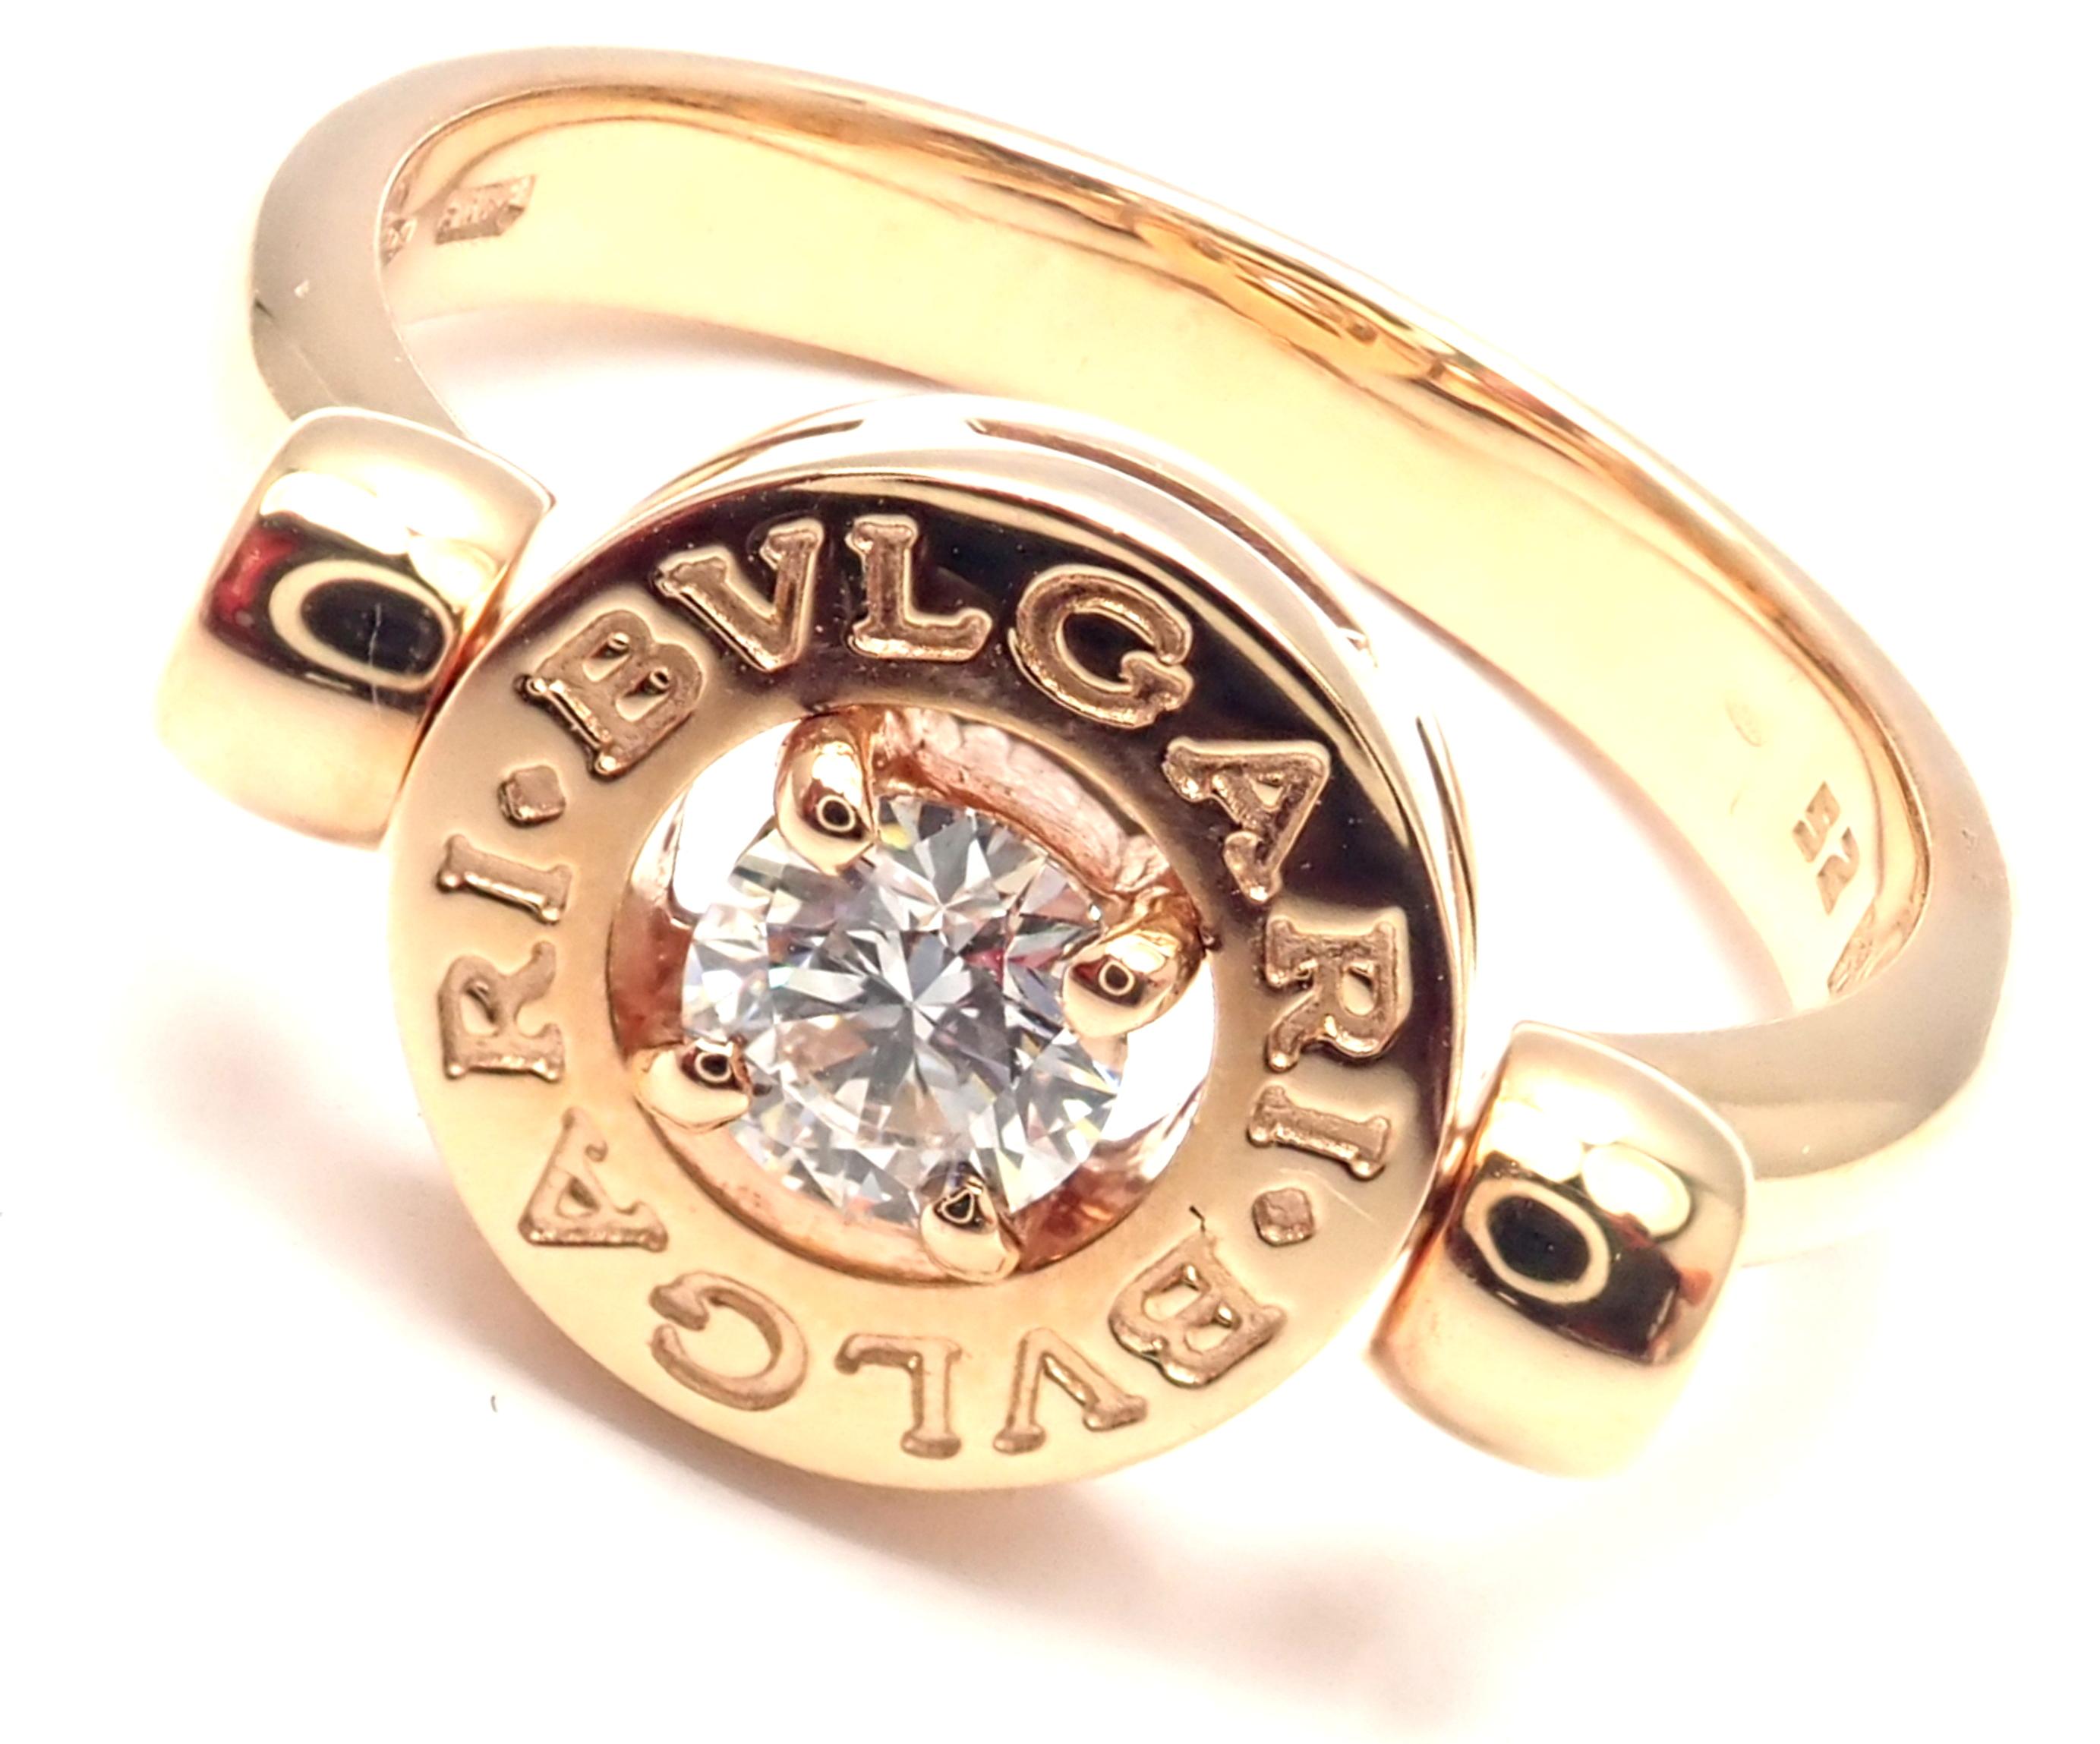 18k Rose Gold Diamant Flip Band Ring von Bulgari. 
Mit 1 runden Diamanten im Brillantschliff VVS1 Reinheit, E Farbe Gesamtgewicht ca. .25ct
Einzelheiten:
Ringgröße: Europäisch 51, US 5 3/4 
Gewicht: 6,1 Gramm
Breite: 9mm
Punzierung: Bvlgari 750 Made